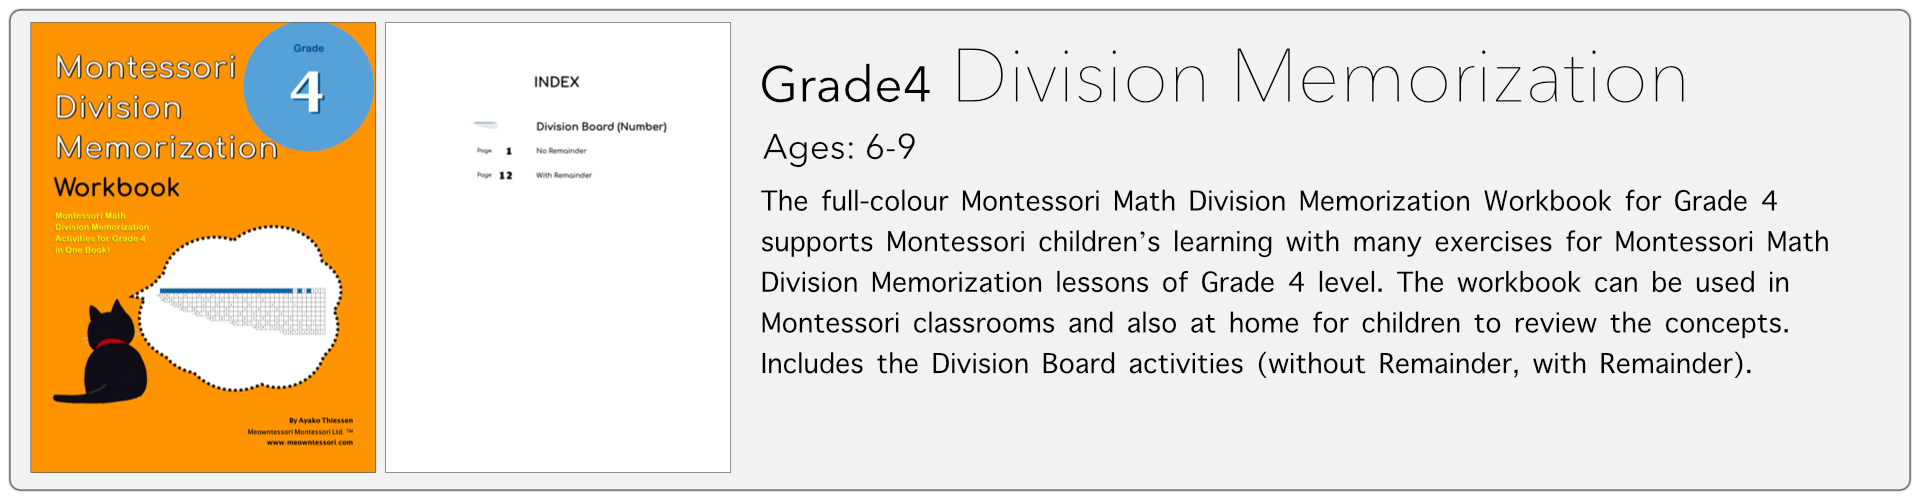 grade4 division memorization